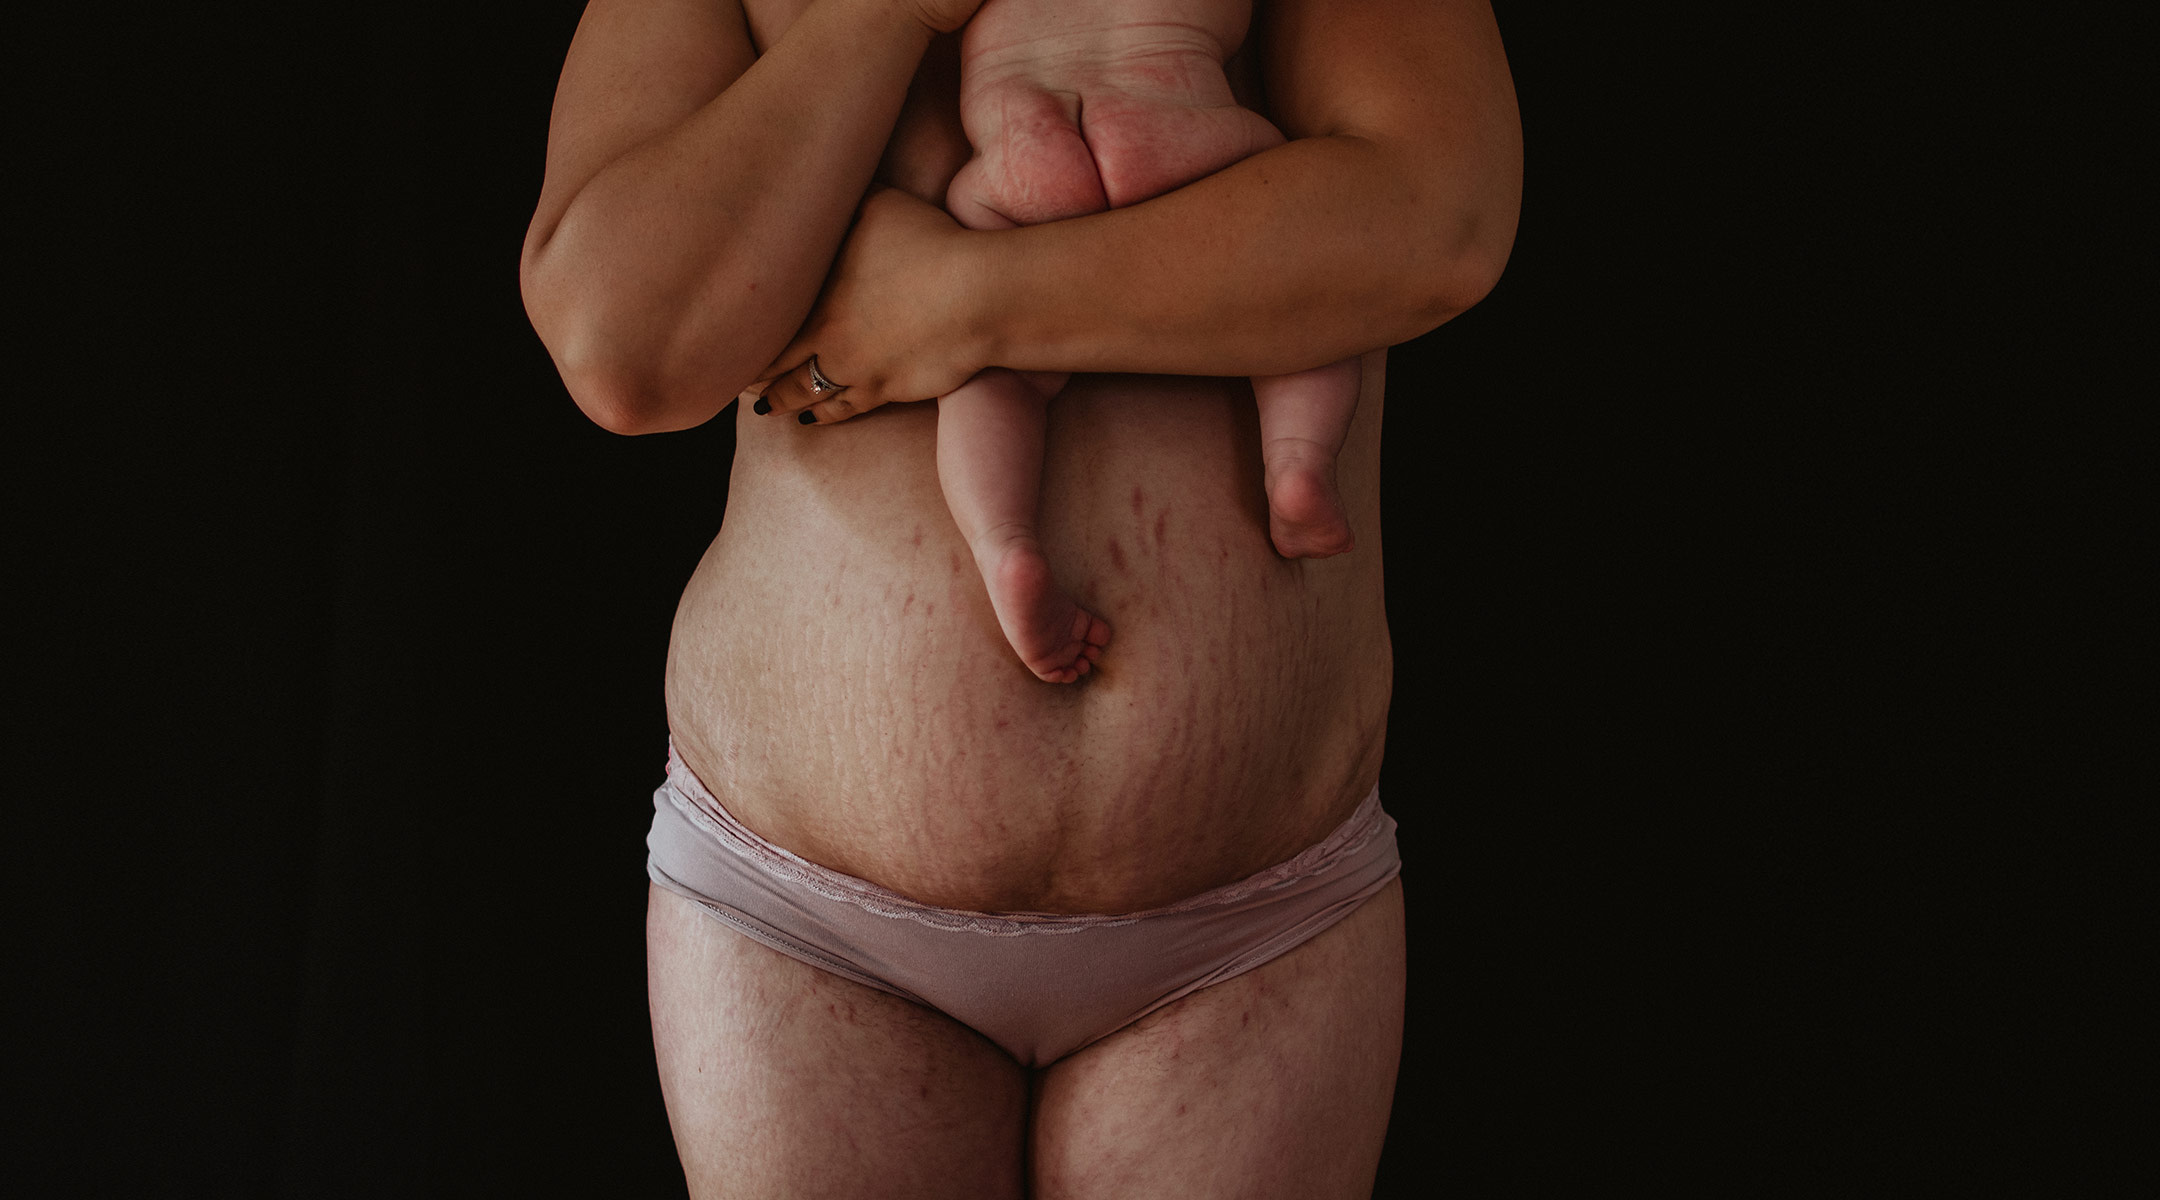 intimate photo series capturing postpartum bodies